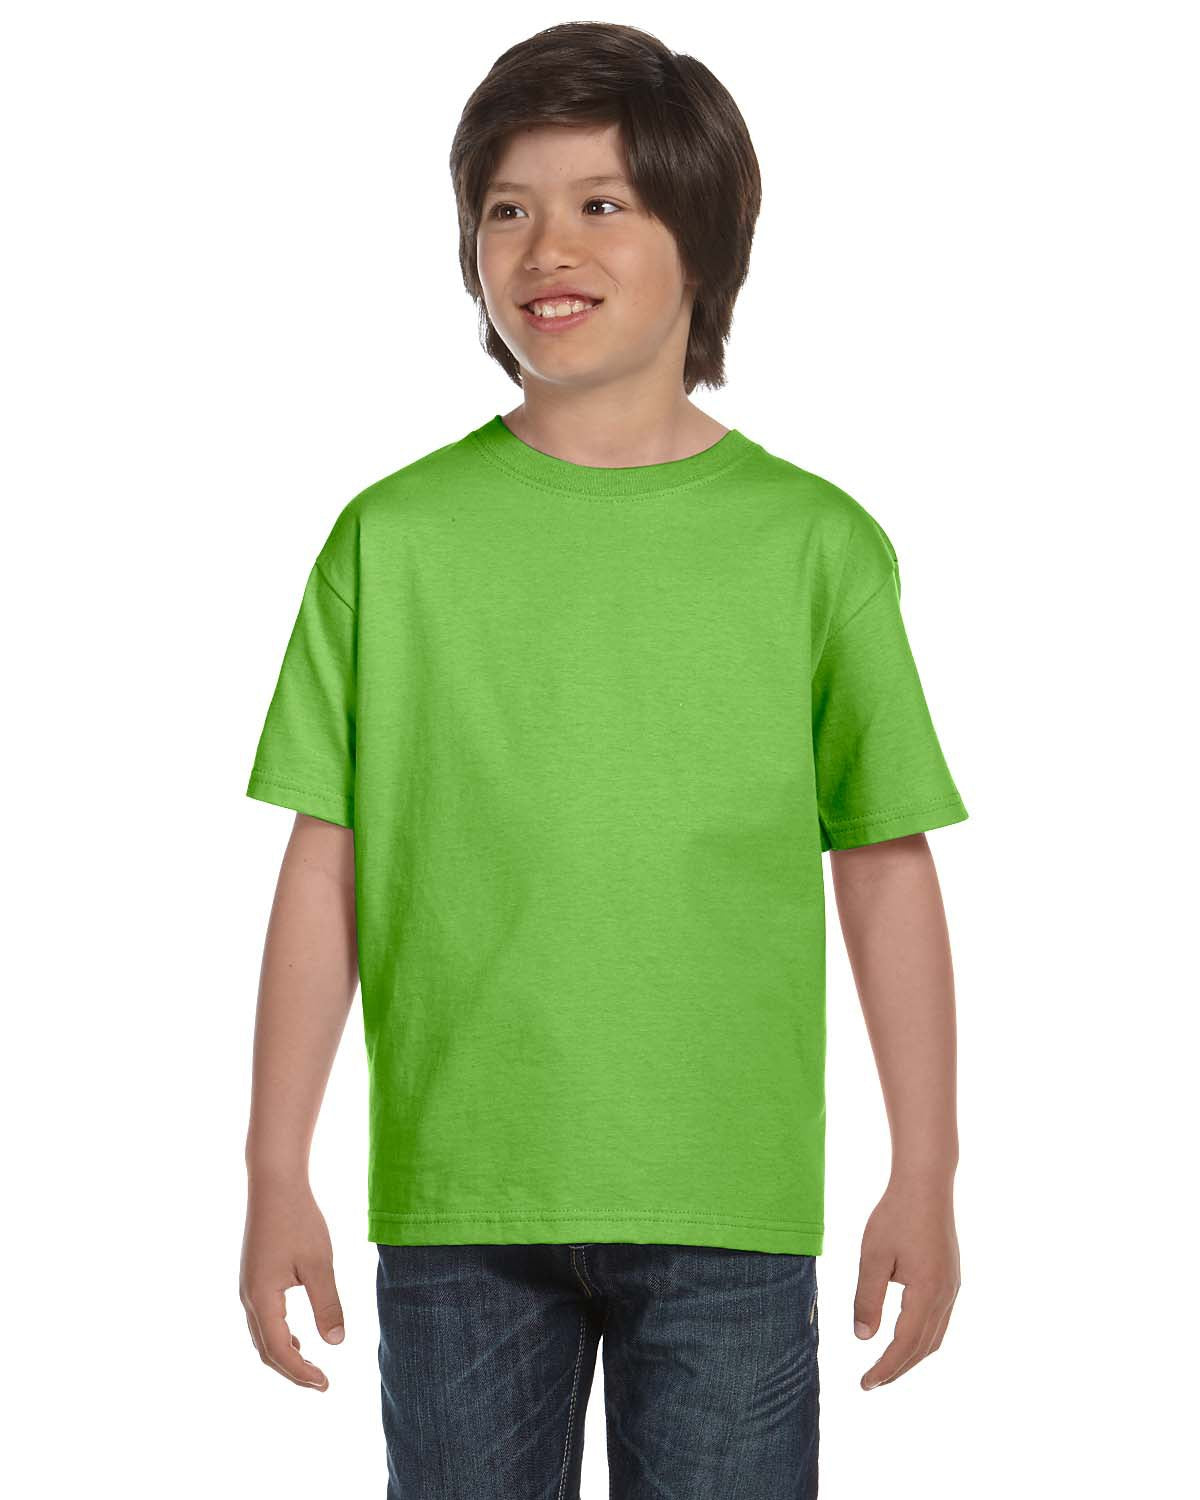 Youth DryBlend T-Shirt G800